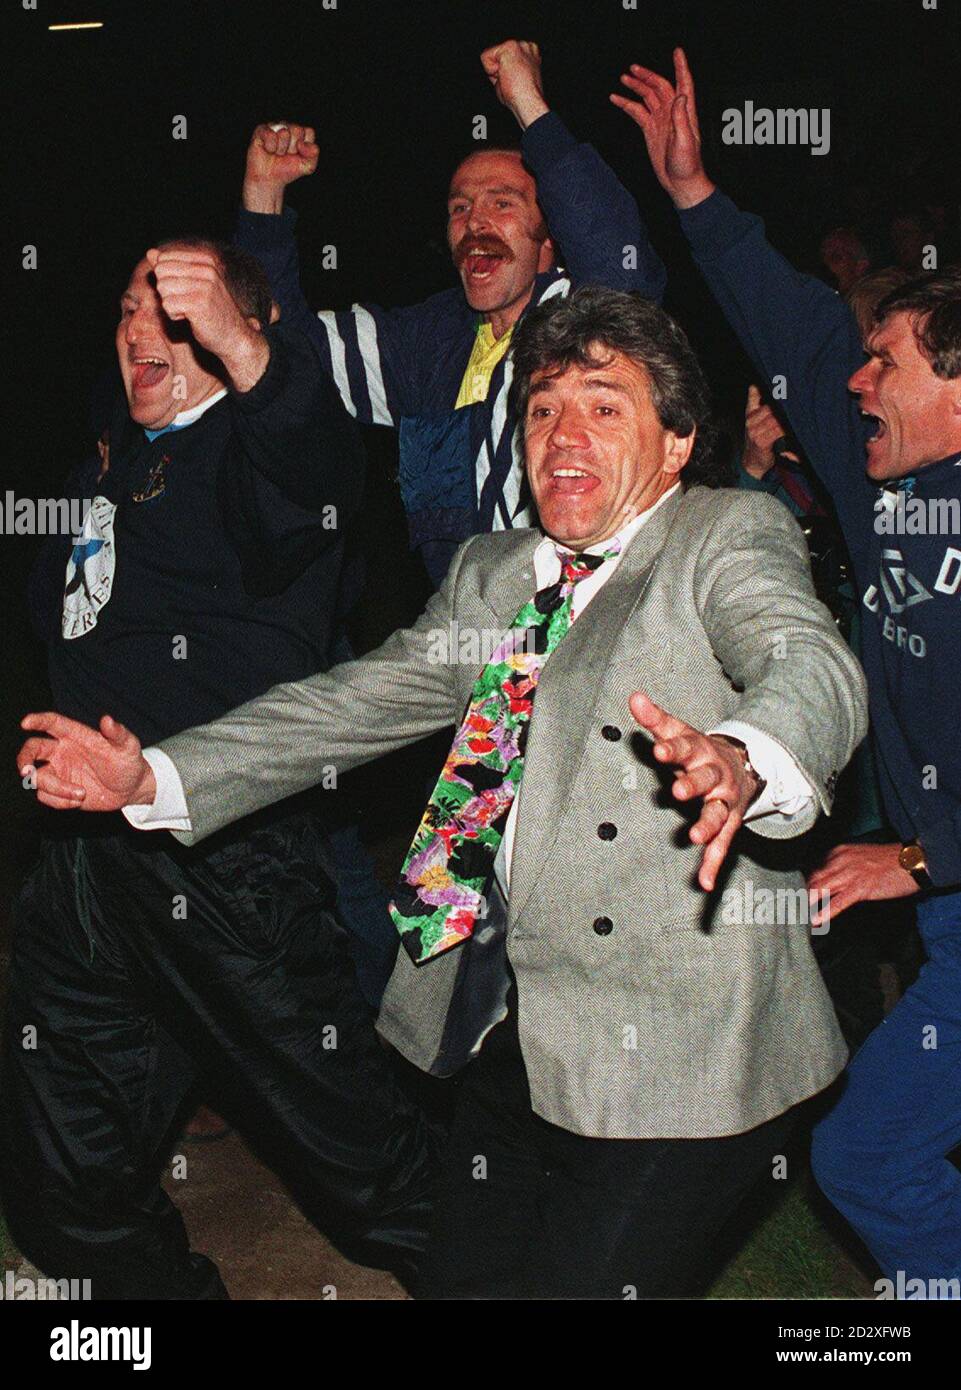 Bibliotheksdatei 255877-1, datiert 4.5.93. Newcastle United Manager Kevin Keegan feiert nach dem Sieg gegen Grimsby, um Aufstieg in die Premier League zu gewinnen. Keegan gab heute (Mi) seinen Rücktritt nach fünf Jahren im Verein bekannt. Siehe PA Geschichte FUSSBALL Keegan. Foto von John Giles/PA Stockfoto